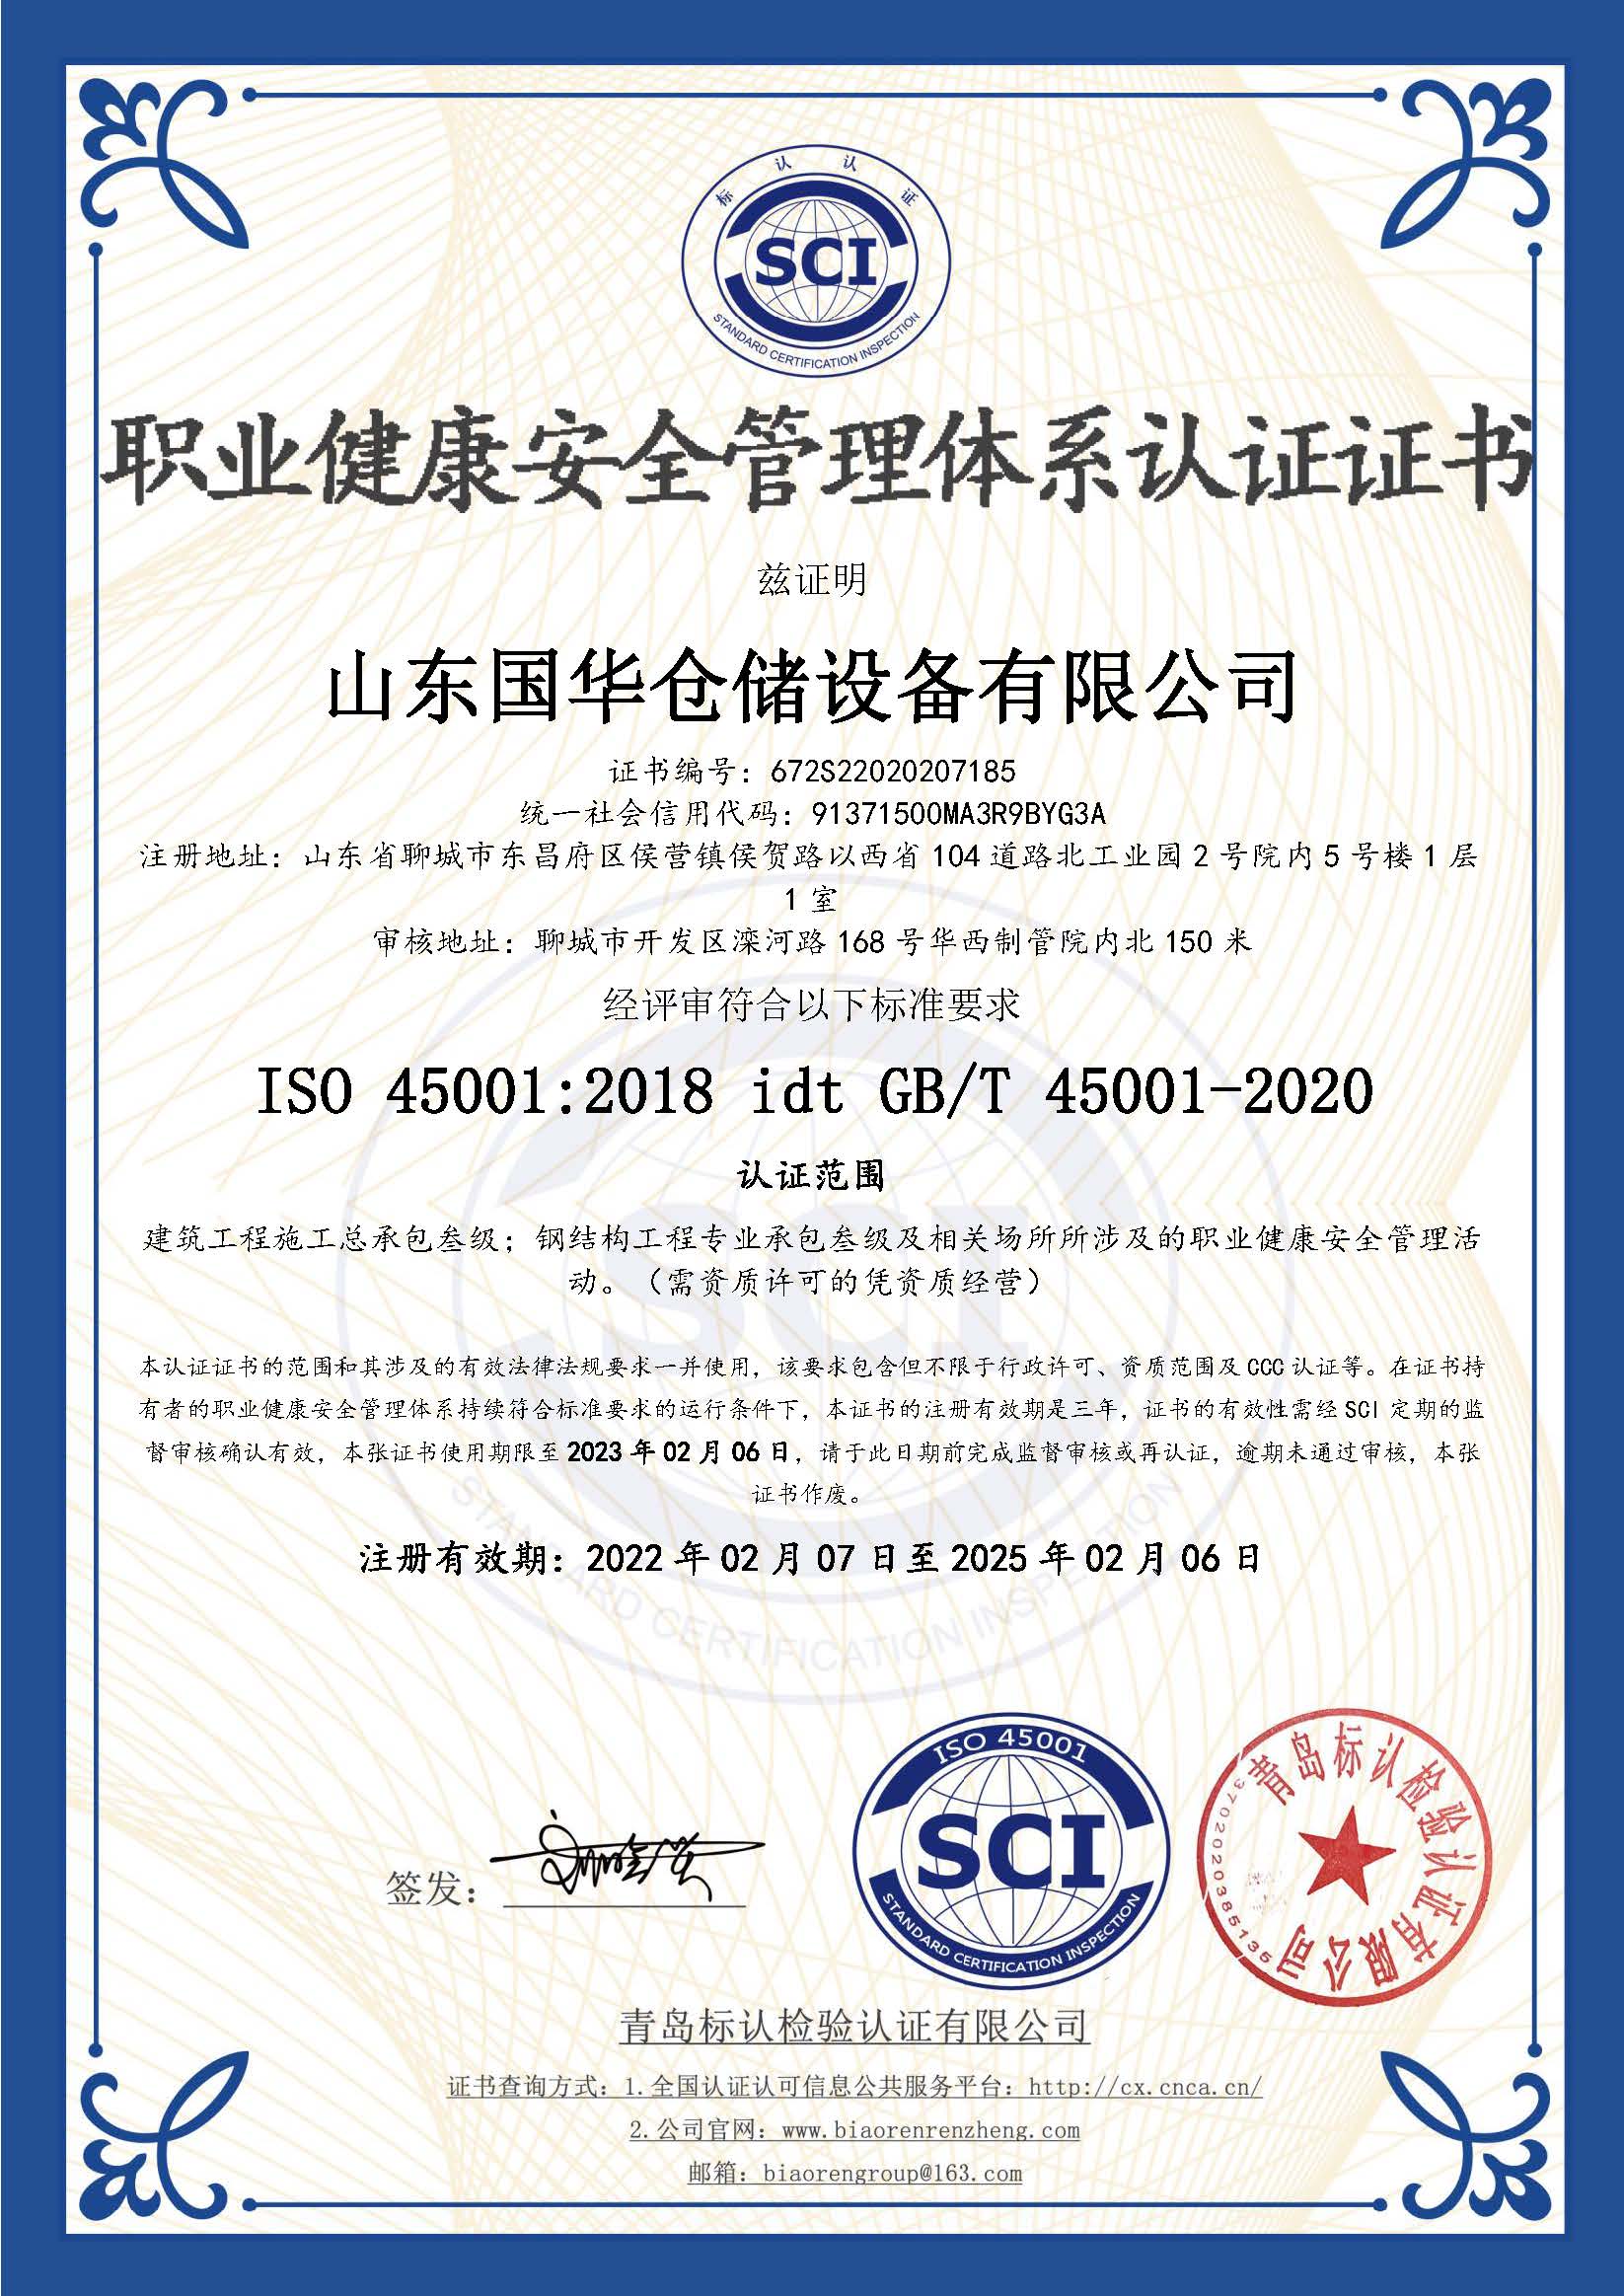 青岛钢板仓职业健康安全管理体系认证证书